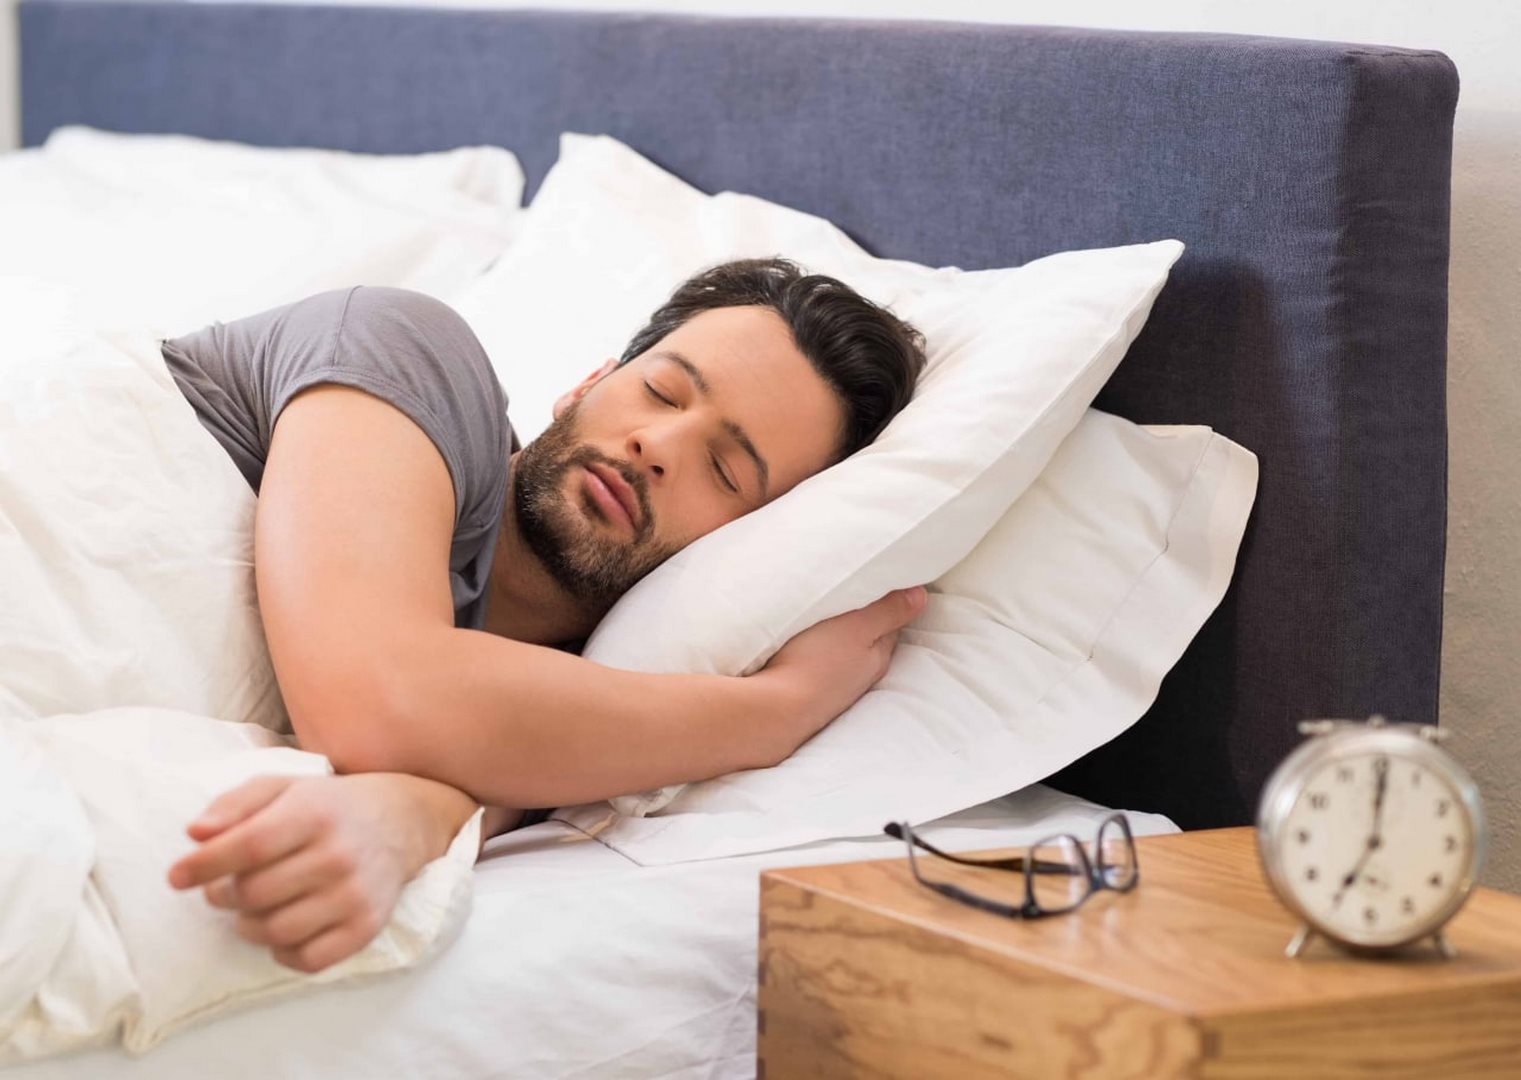 دراسة جديدة تحدد ساعة النوم المثالية والتي تحافظ على صحة القلب من الأمراض